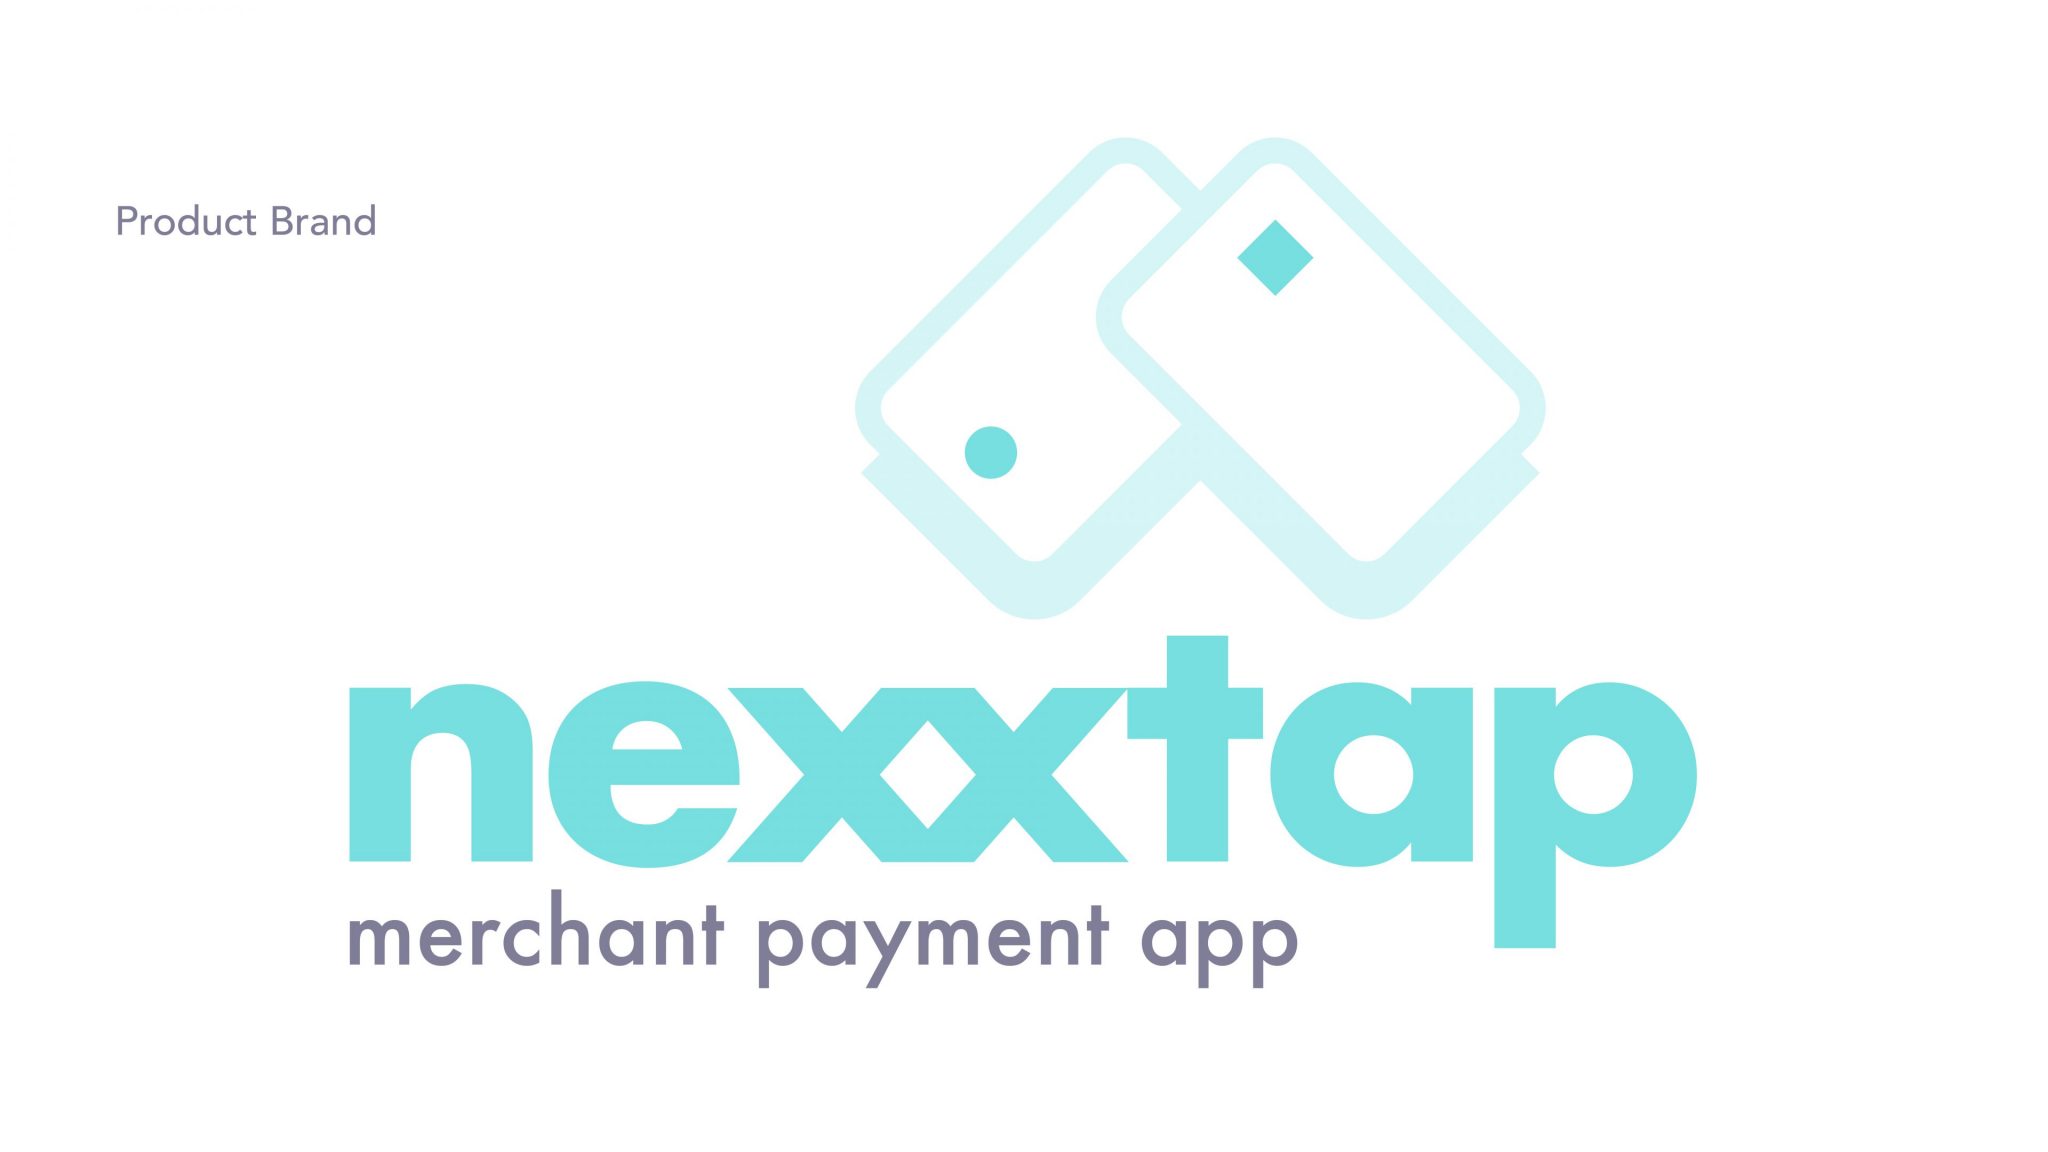 Nexxtap merchant payment app brand logo